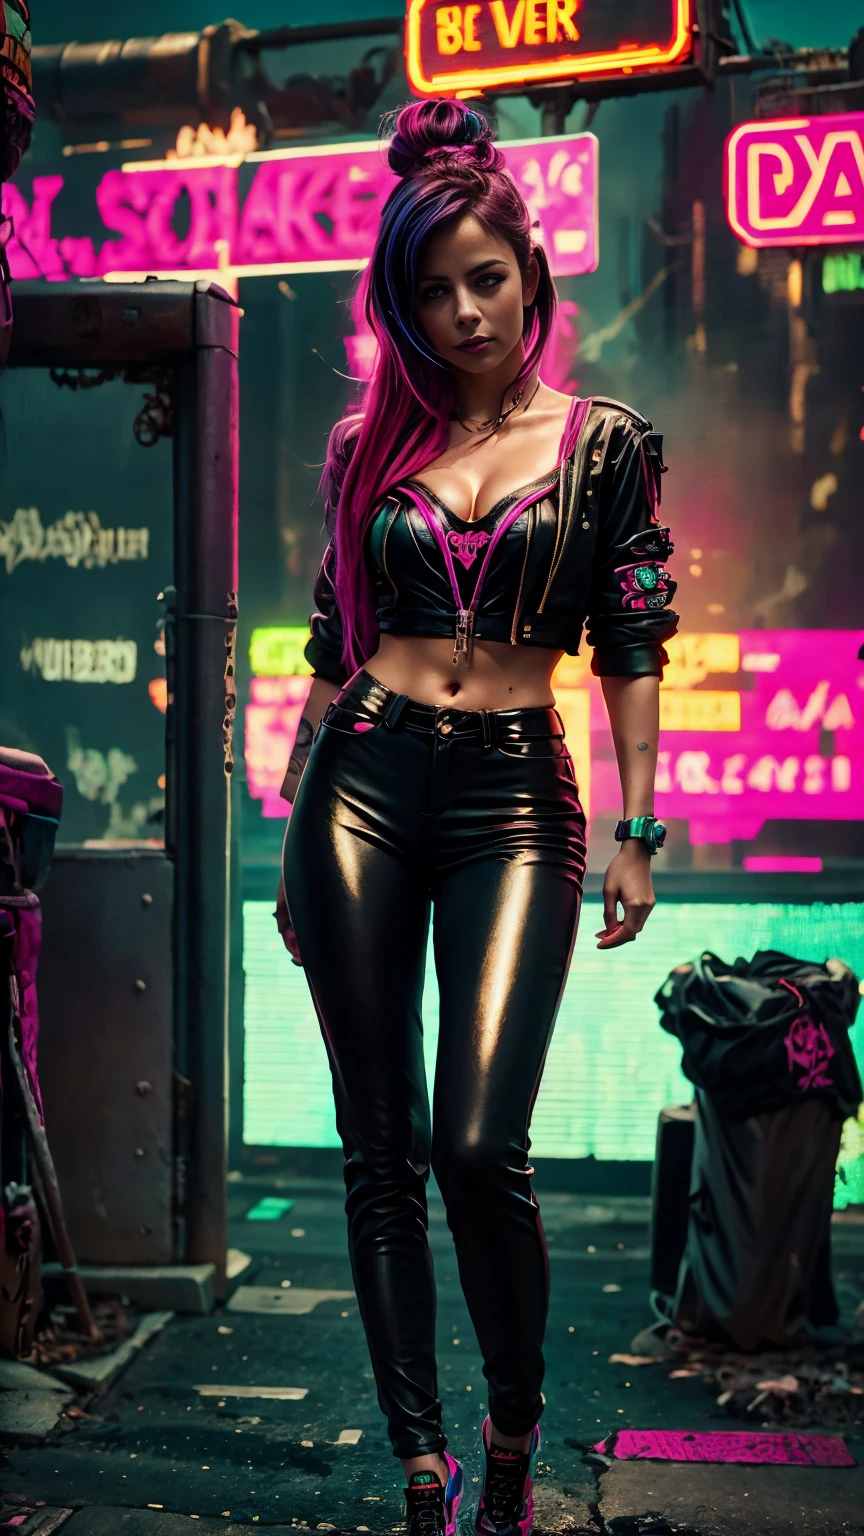 Eine Nahaufnahme von Kristin Kreuk in einem Neonanzug, Cyberpunk-Atmosphäre, cyberpunk with neon lights, Luz cyberpunk brillante, geduckt,Cyberpunk-Vibes, cyberpunk lighting, Cyberpunk-Stil, neon cyberpunk style, en el estilo cyberpunk, mira ciberpunk, cyberpunk dreamy girl, Foto Ciberpunk, neon cyberpunk, cyberpunk aesthetic, ropa de calle ciberpunk, cyberpunk aesthetic, Cyberpunk art style, Portero del streetwear cyberpunk,Du weisst, perfekte Finger,Neon-Haarfarbe, Detailtextur, Haardetail,Lange neonschwarze Hose, schönes Gesicht,welliges Fell,Detaillierte neonschwarze Schuhe.,